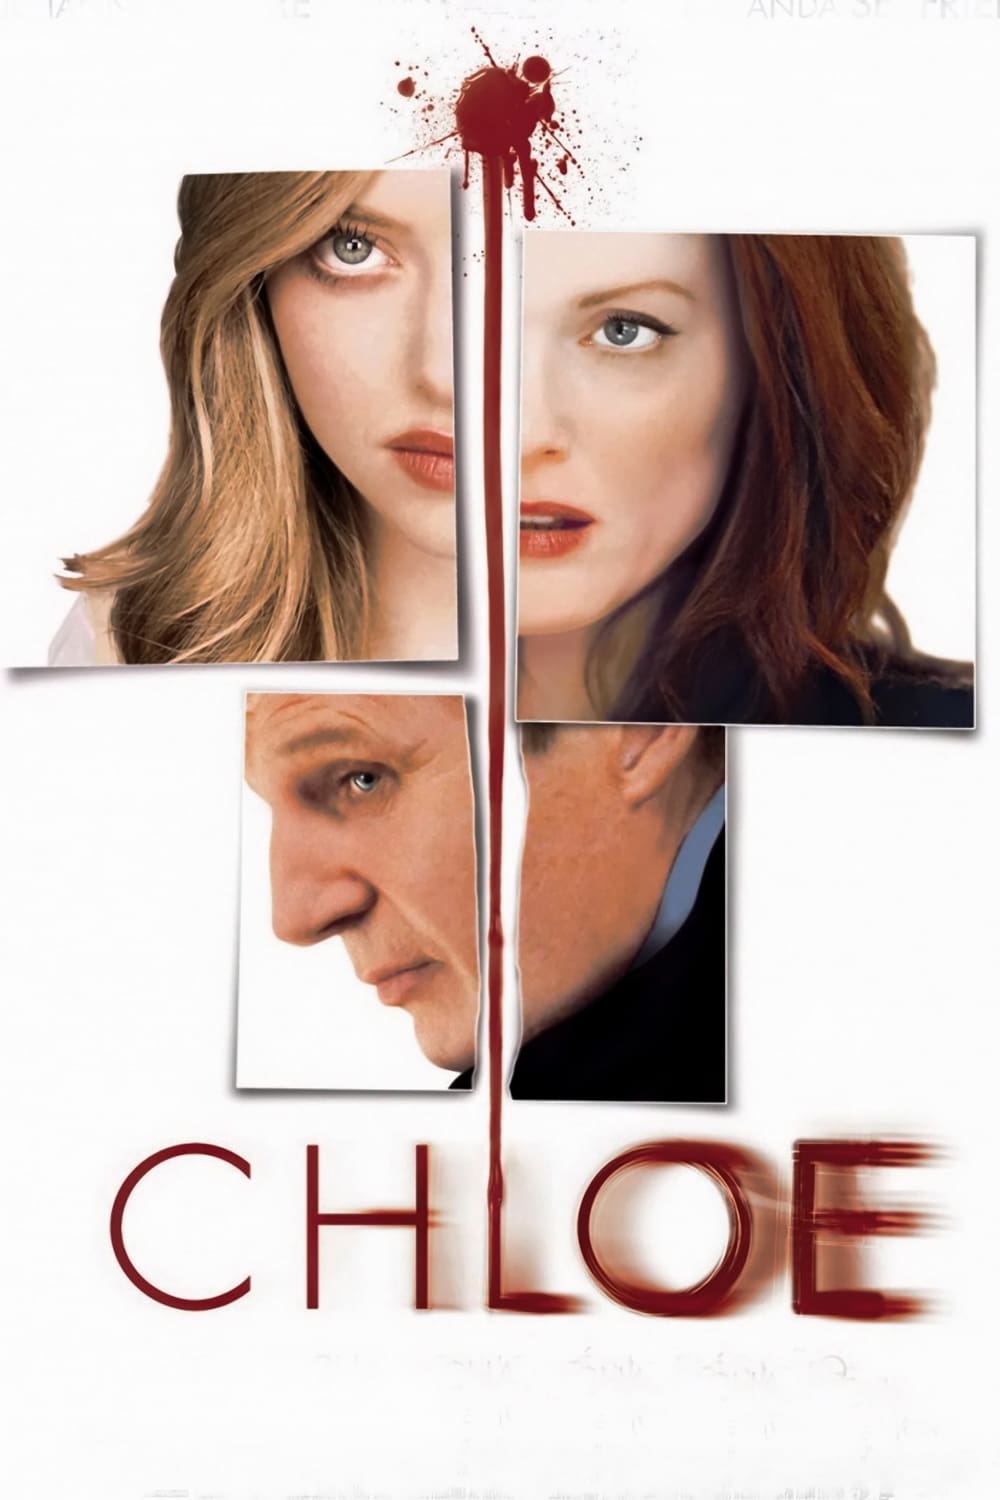 Chloe (Chloe) [2010]